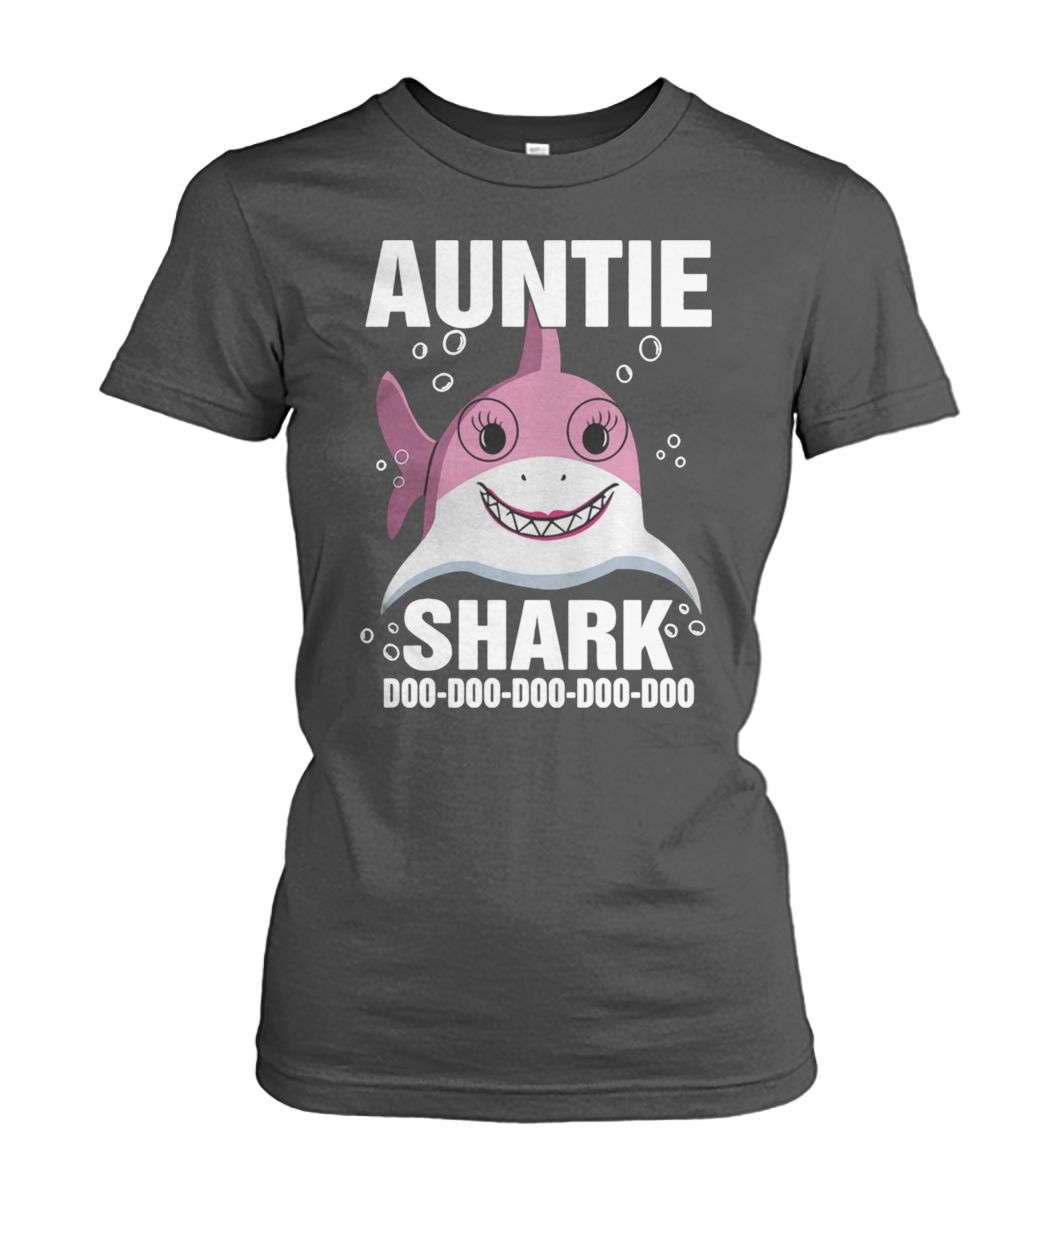 Auntie shark doo doo doo doo doo women's crew tee